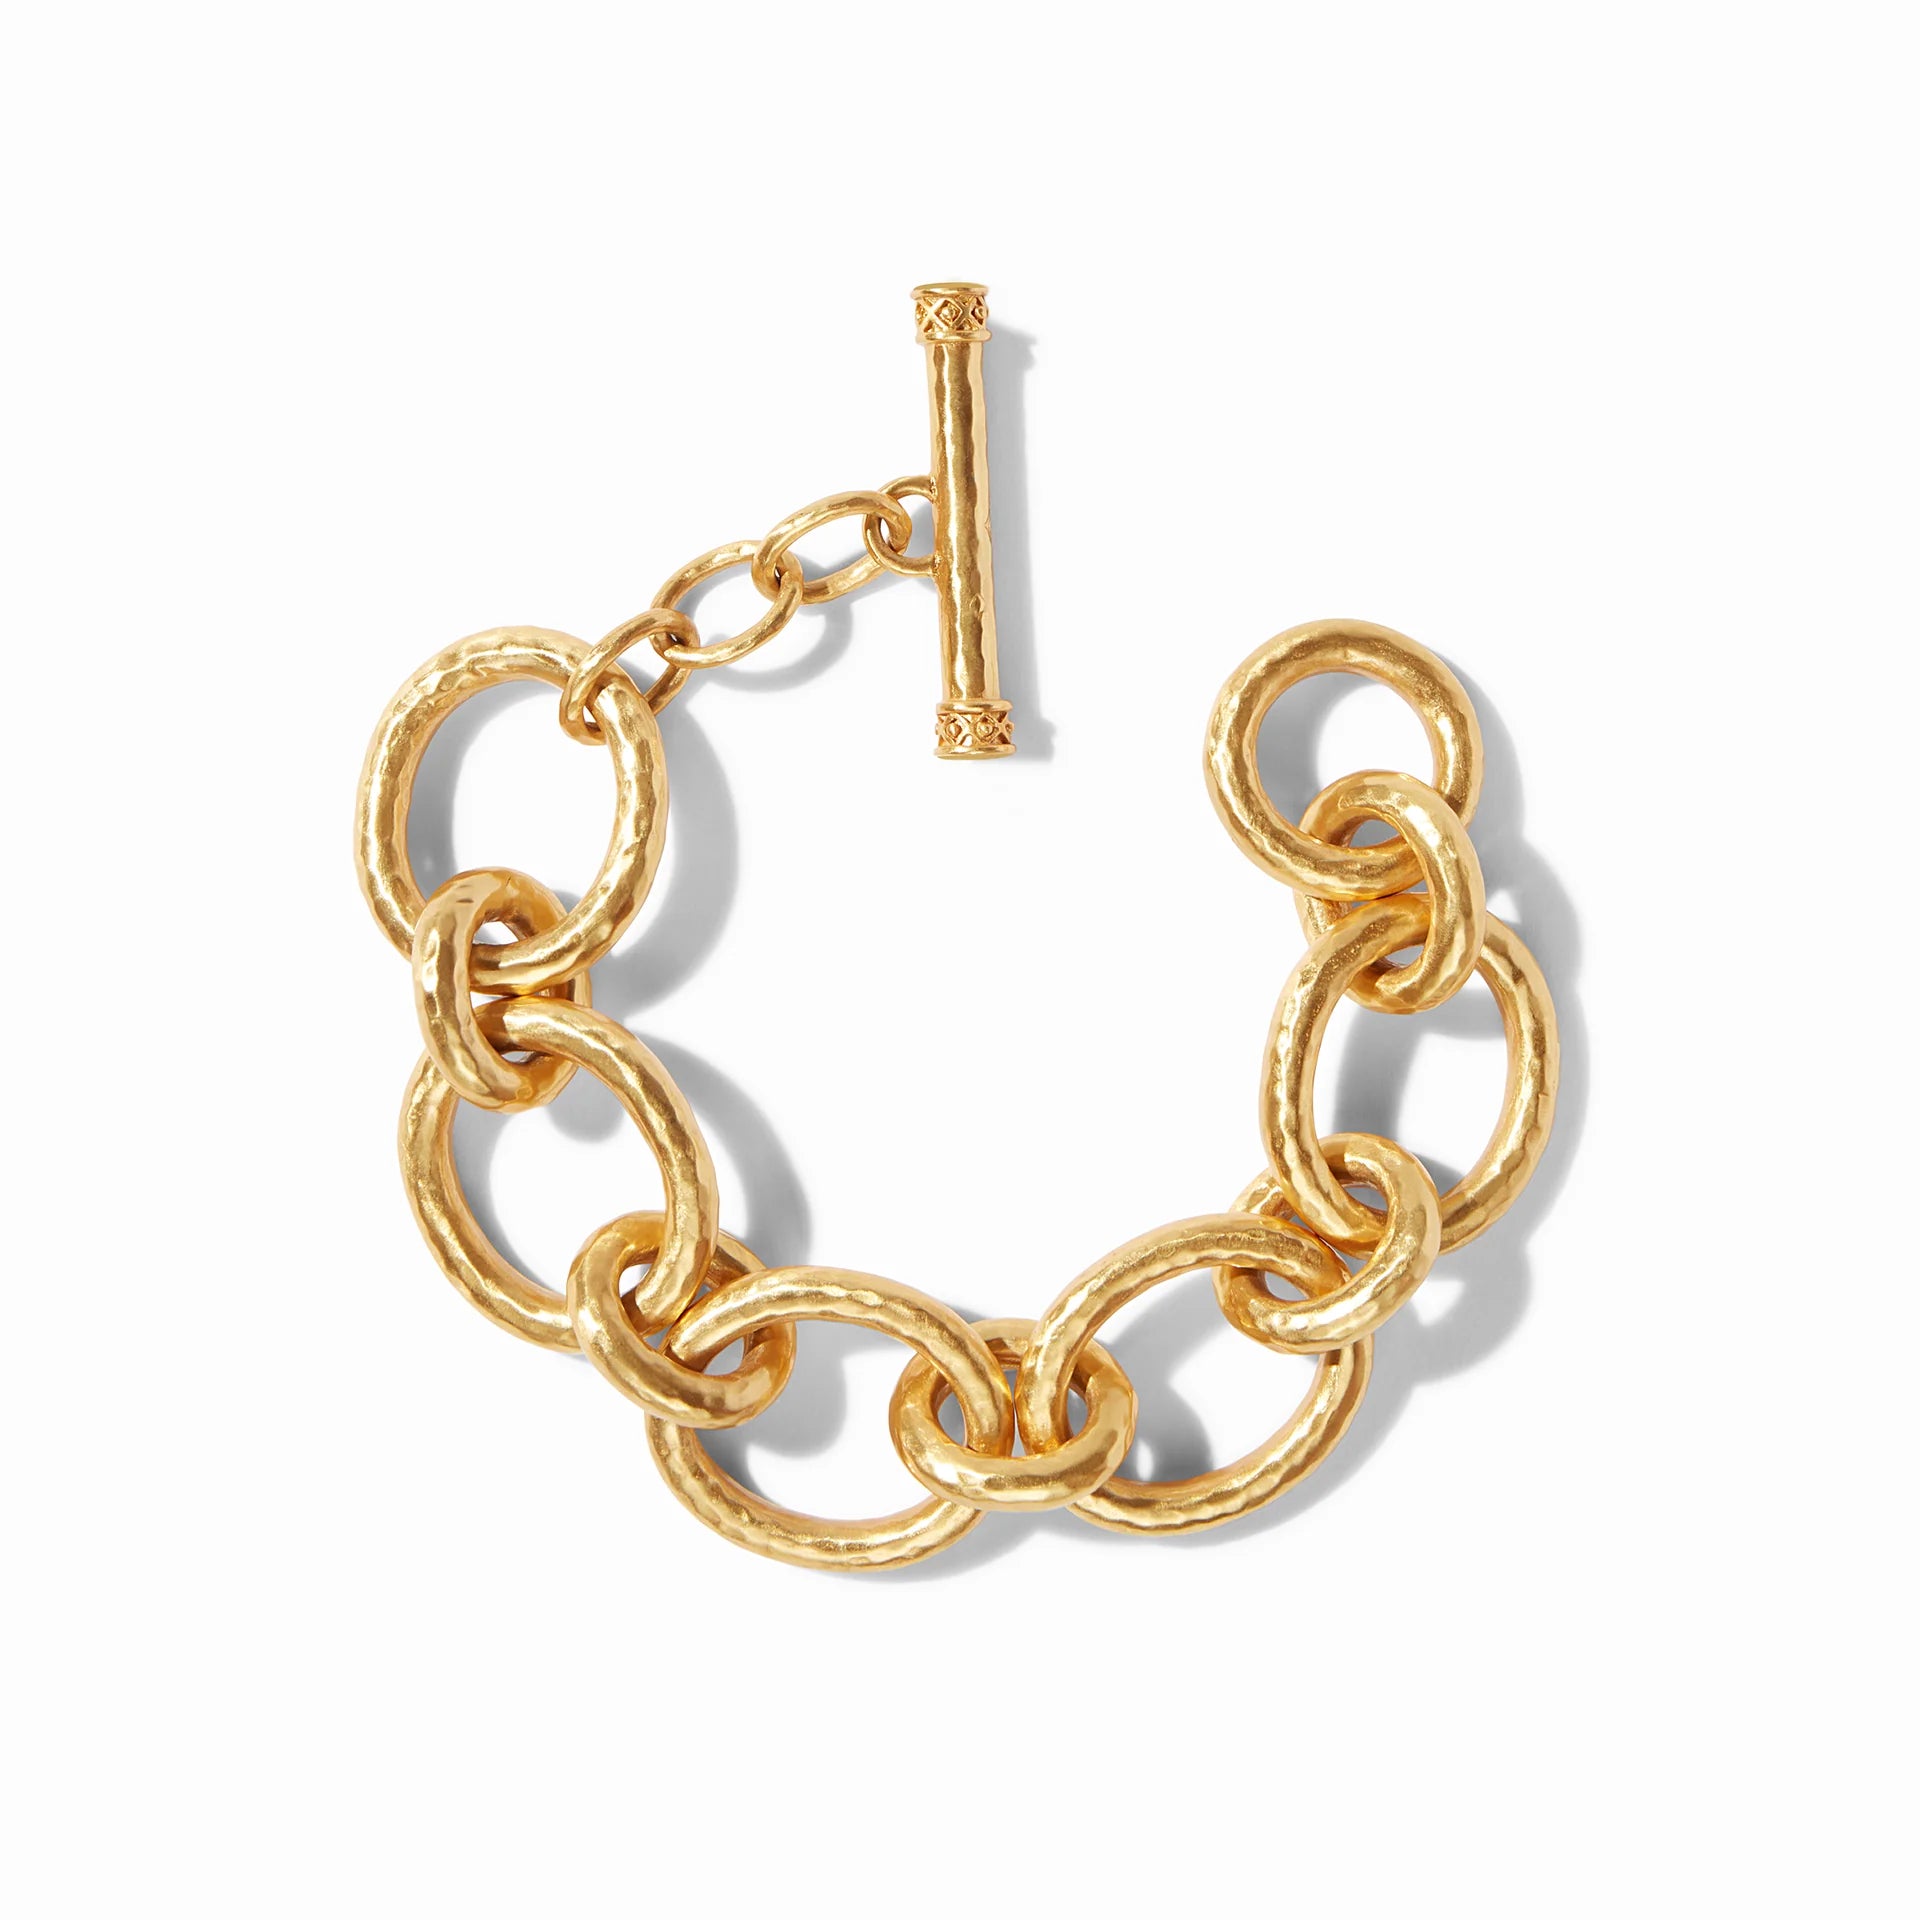 Julie Vos | Catalina Link Bracelet in Gold - Giddy Up Glamour Boutique